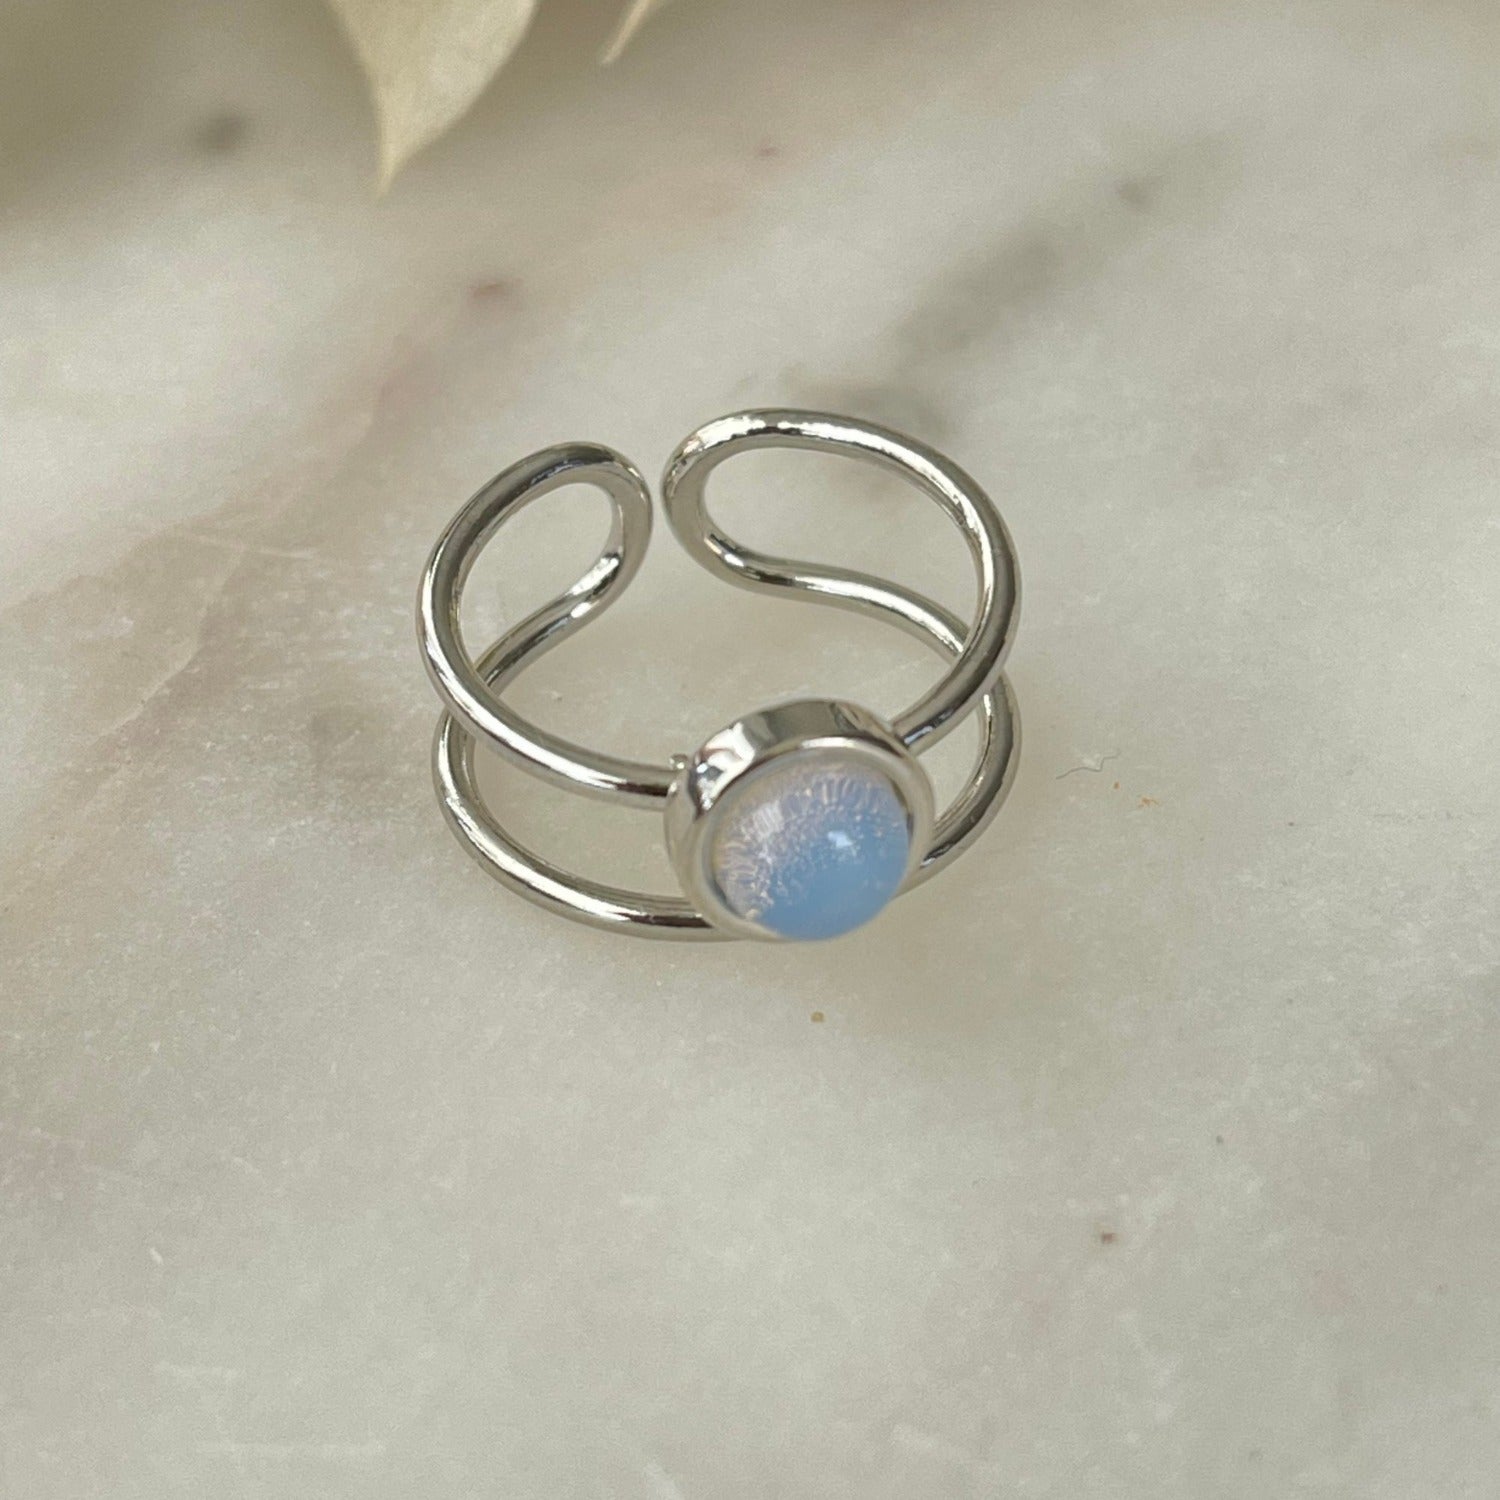 Der Ring "Mel" mit opalisierendem Stein strahlt pure Eleganz aus. Ein offener, verstellbarer Cocktailring. Dieser Ring ist perfekt für Frauen, die elegante und auffällige Stücke schätzen